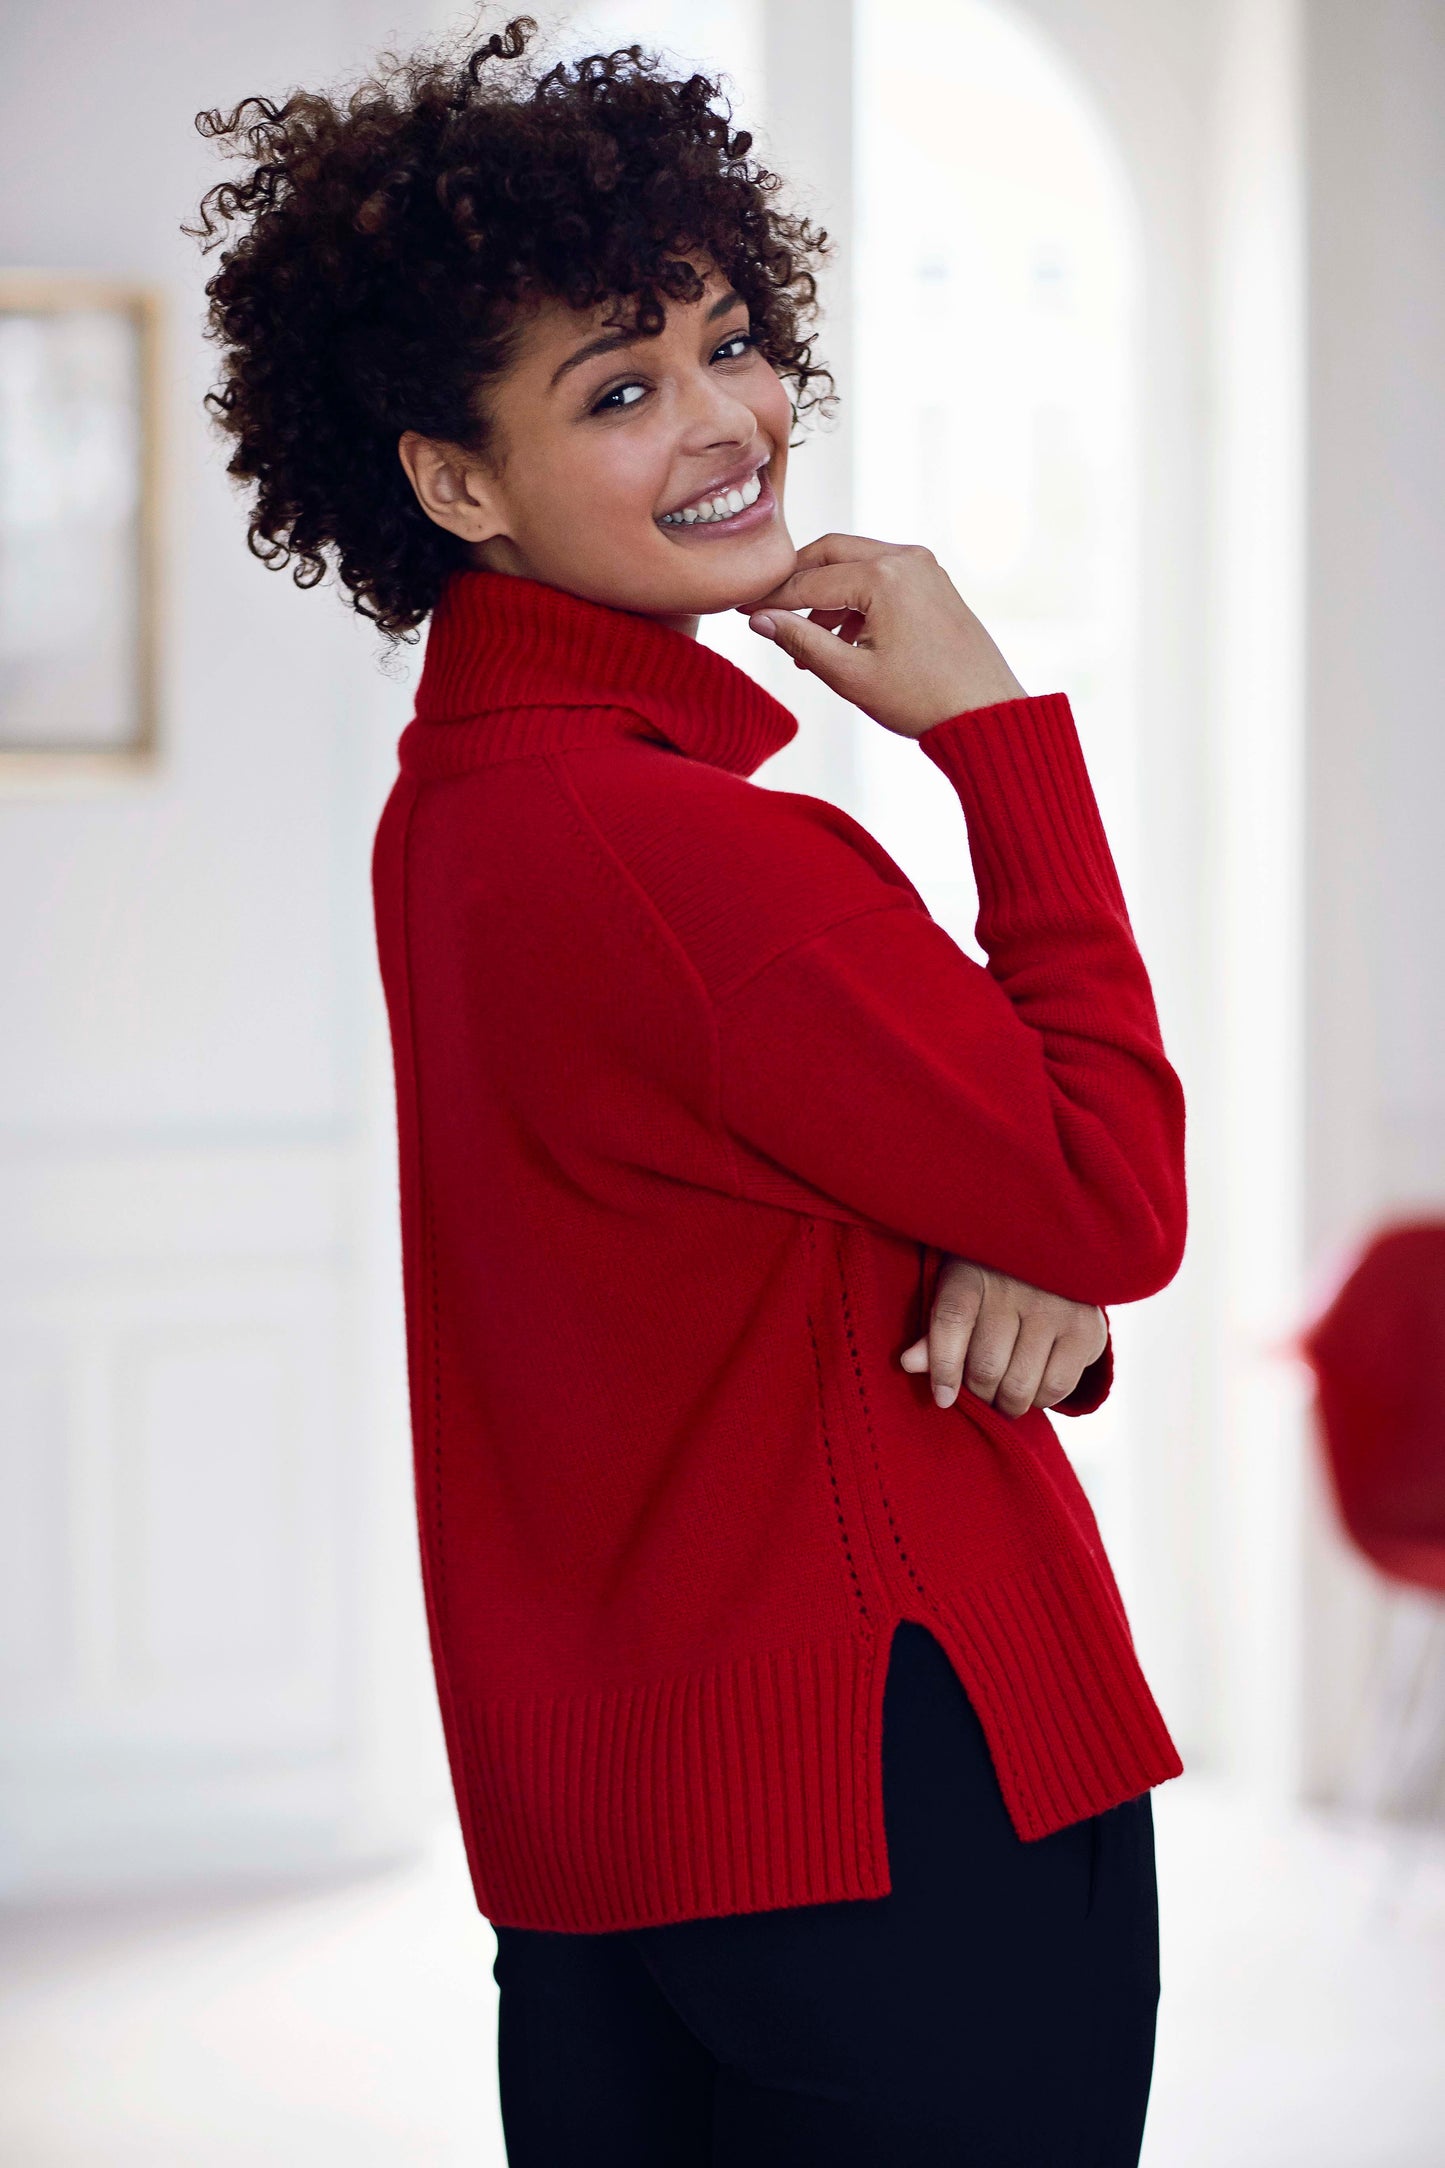 Marilyn - cashmere sweater med turtleneck - Rød